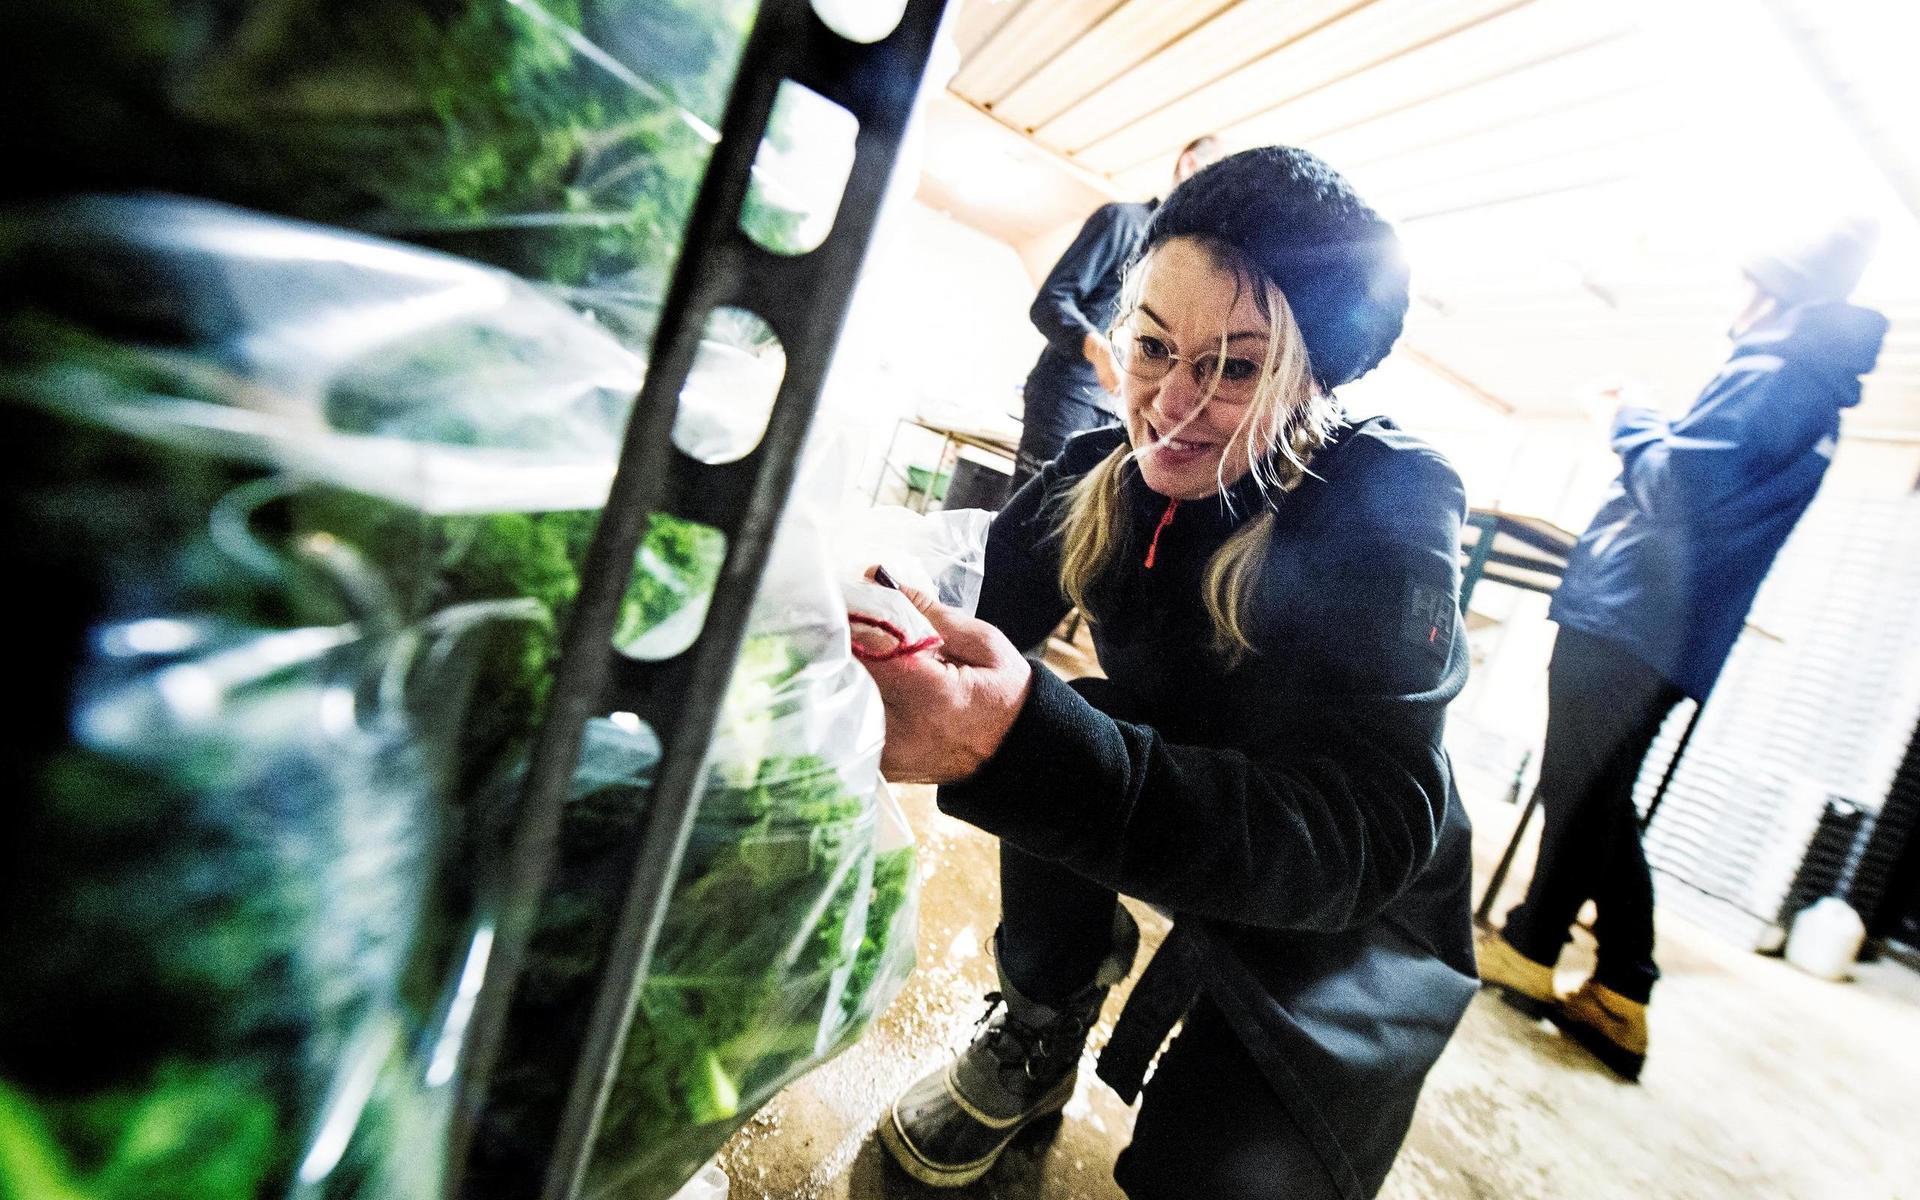 Mija Kanerot på Ugglarps Grönt hade fullt upp med försäljningen av grönkål i helgen.